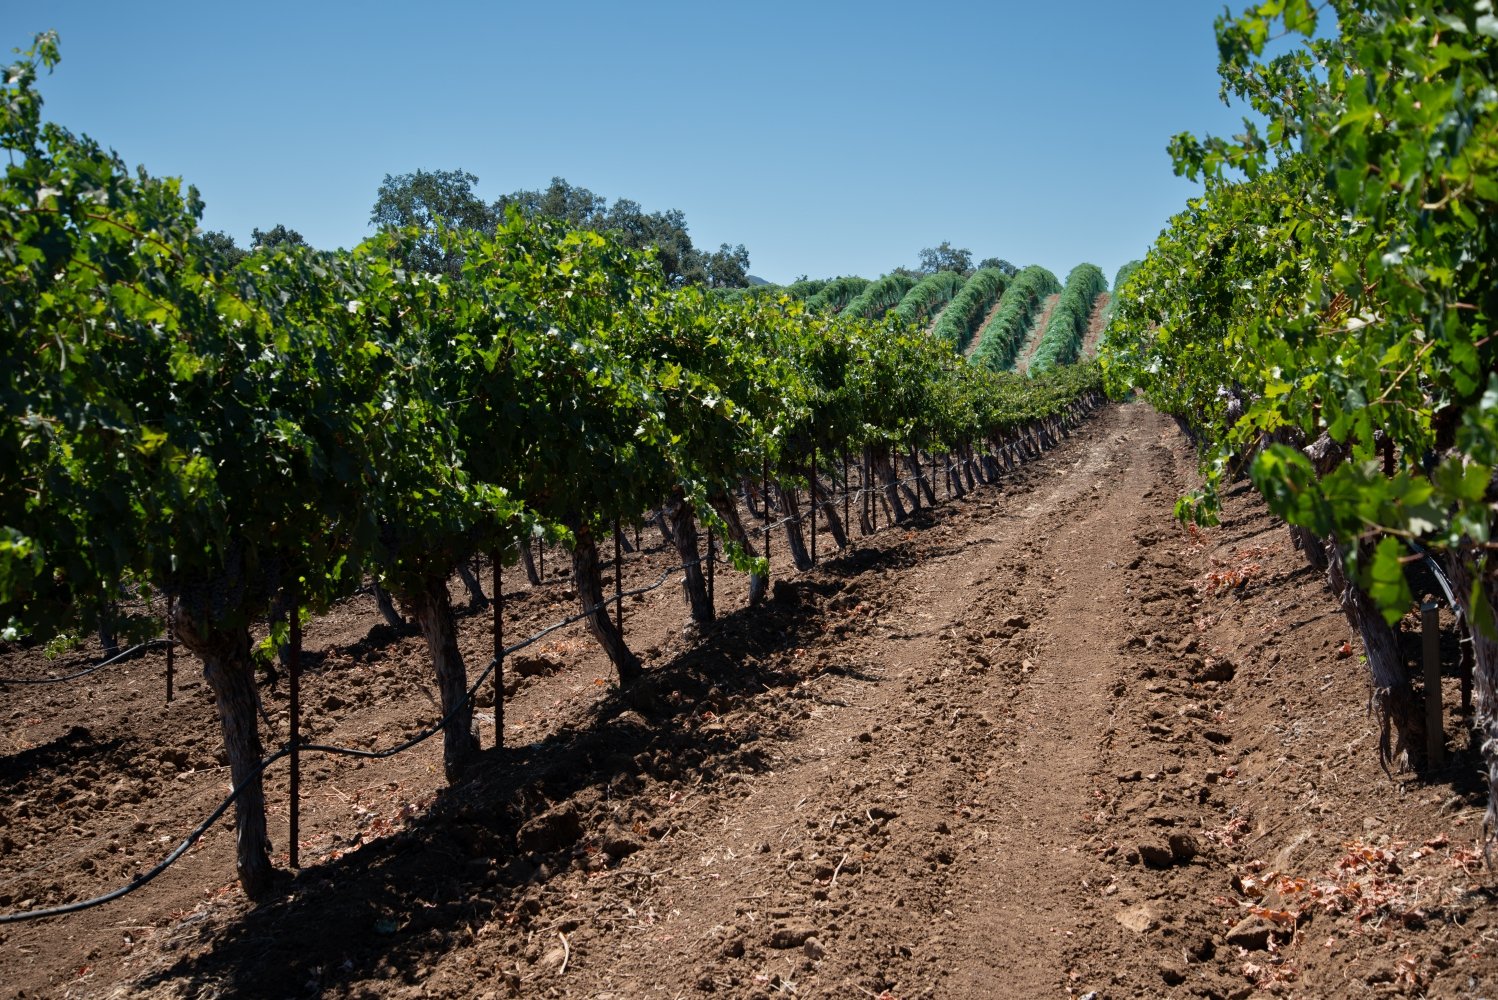 Vineyard vines extending over rolling hills.